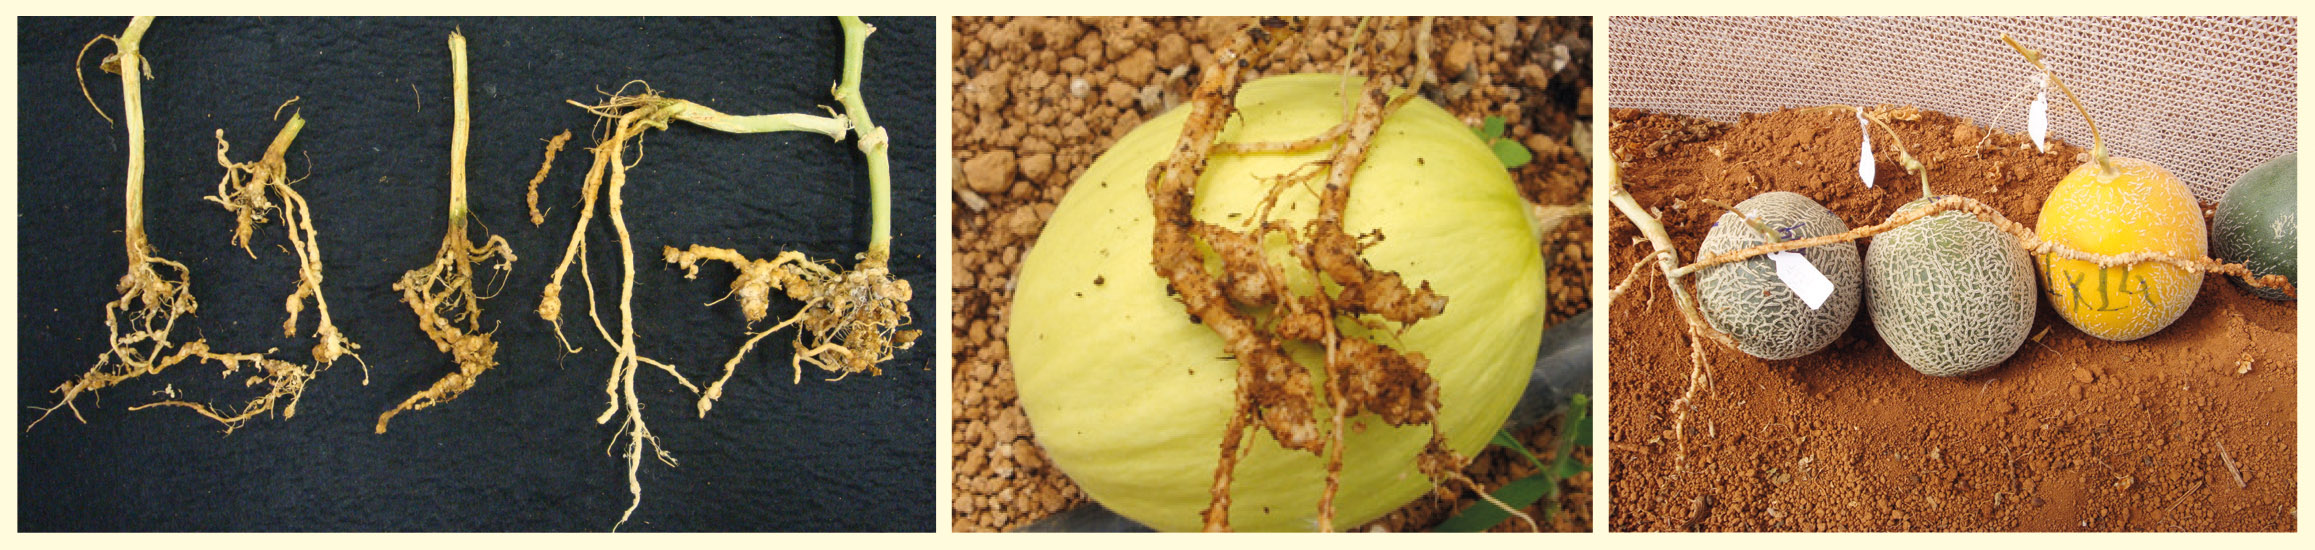 Figura 1 - Sintomas em raízes de melão causados por Meloidogyne javanica cultivado em cultivo protegido. A e B: Galhas em melão pele lisa; C: Galhas em raízes de melão pele de sapo.